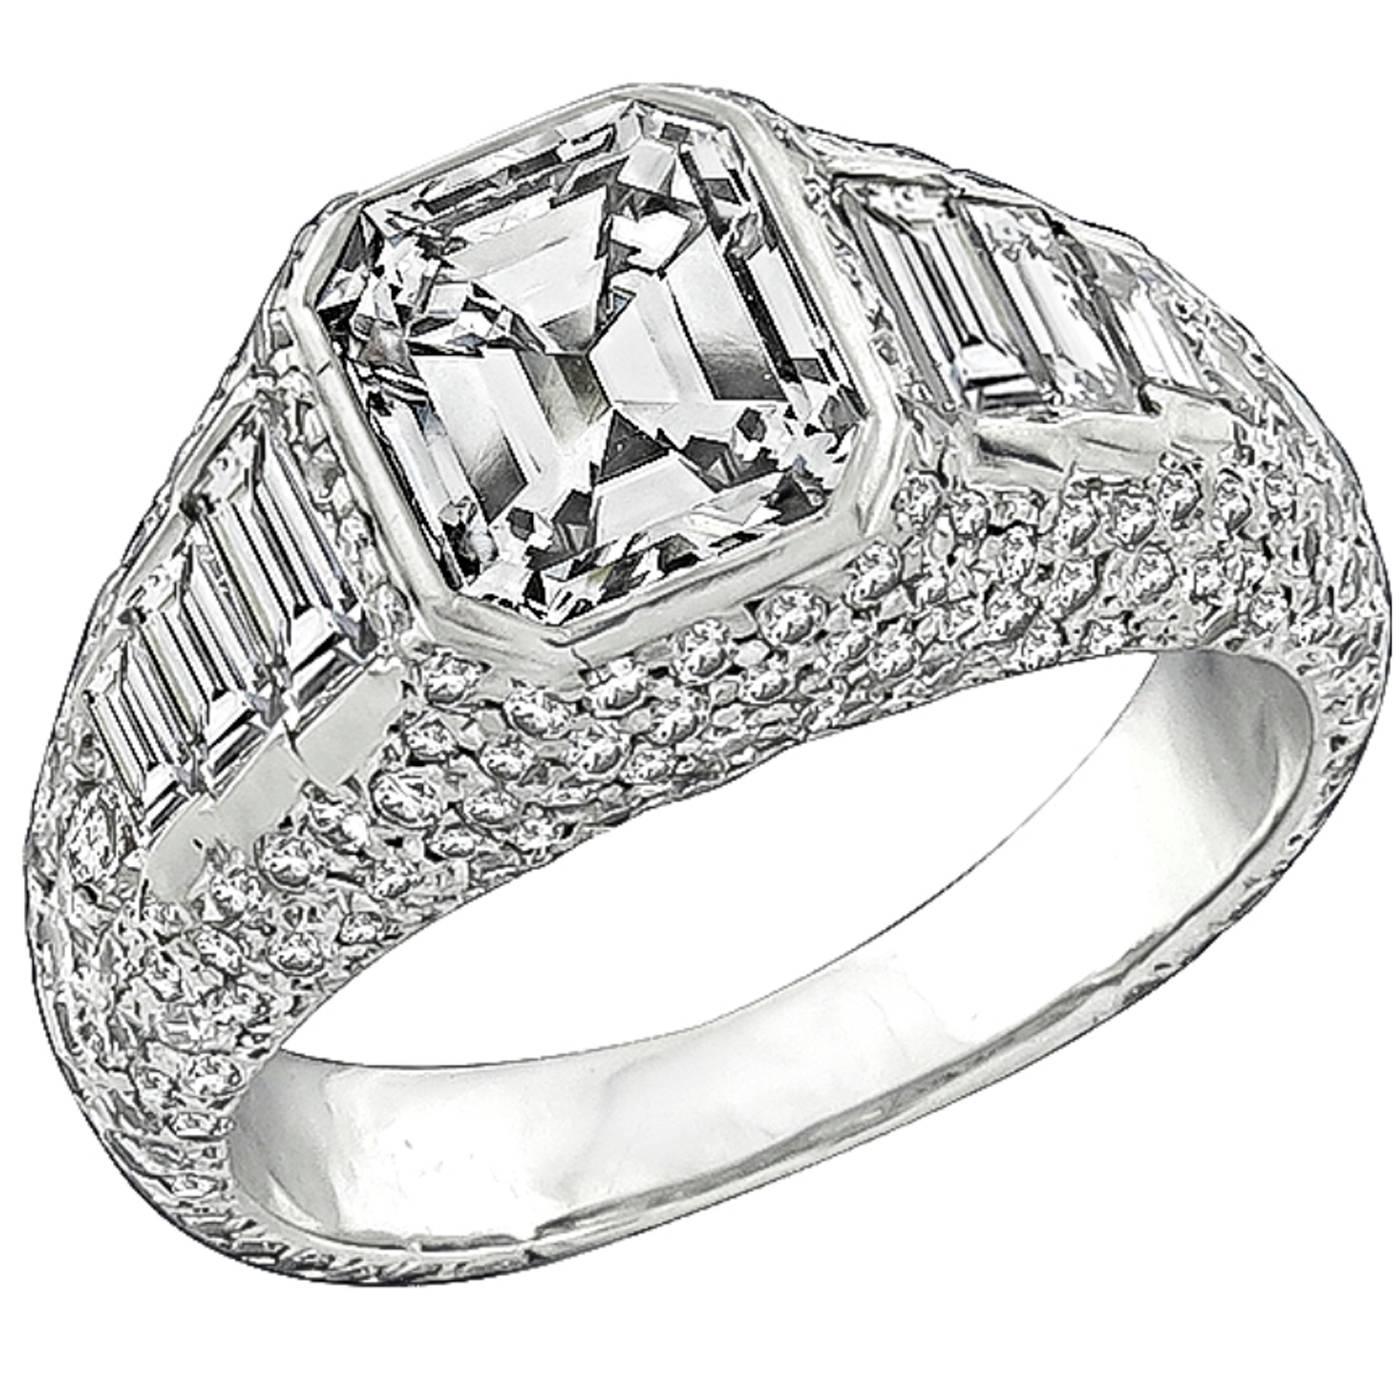 2.02 Carat Emerald Cut Diamond Platinum Engagement Ring